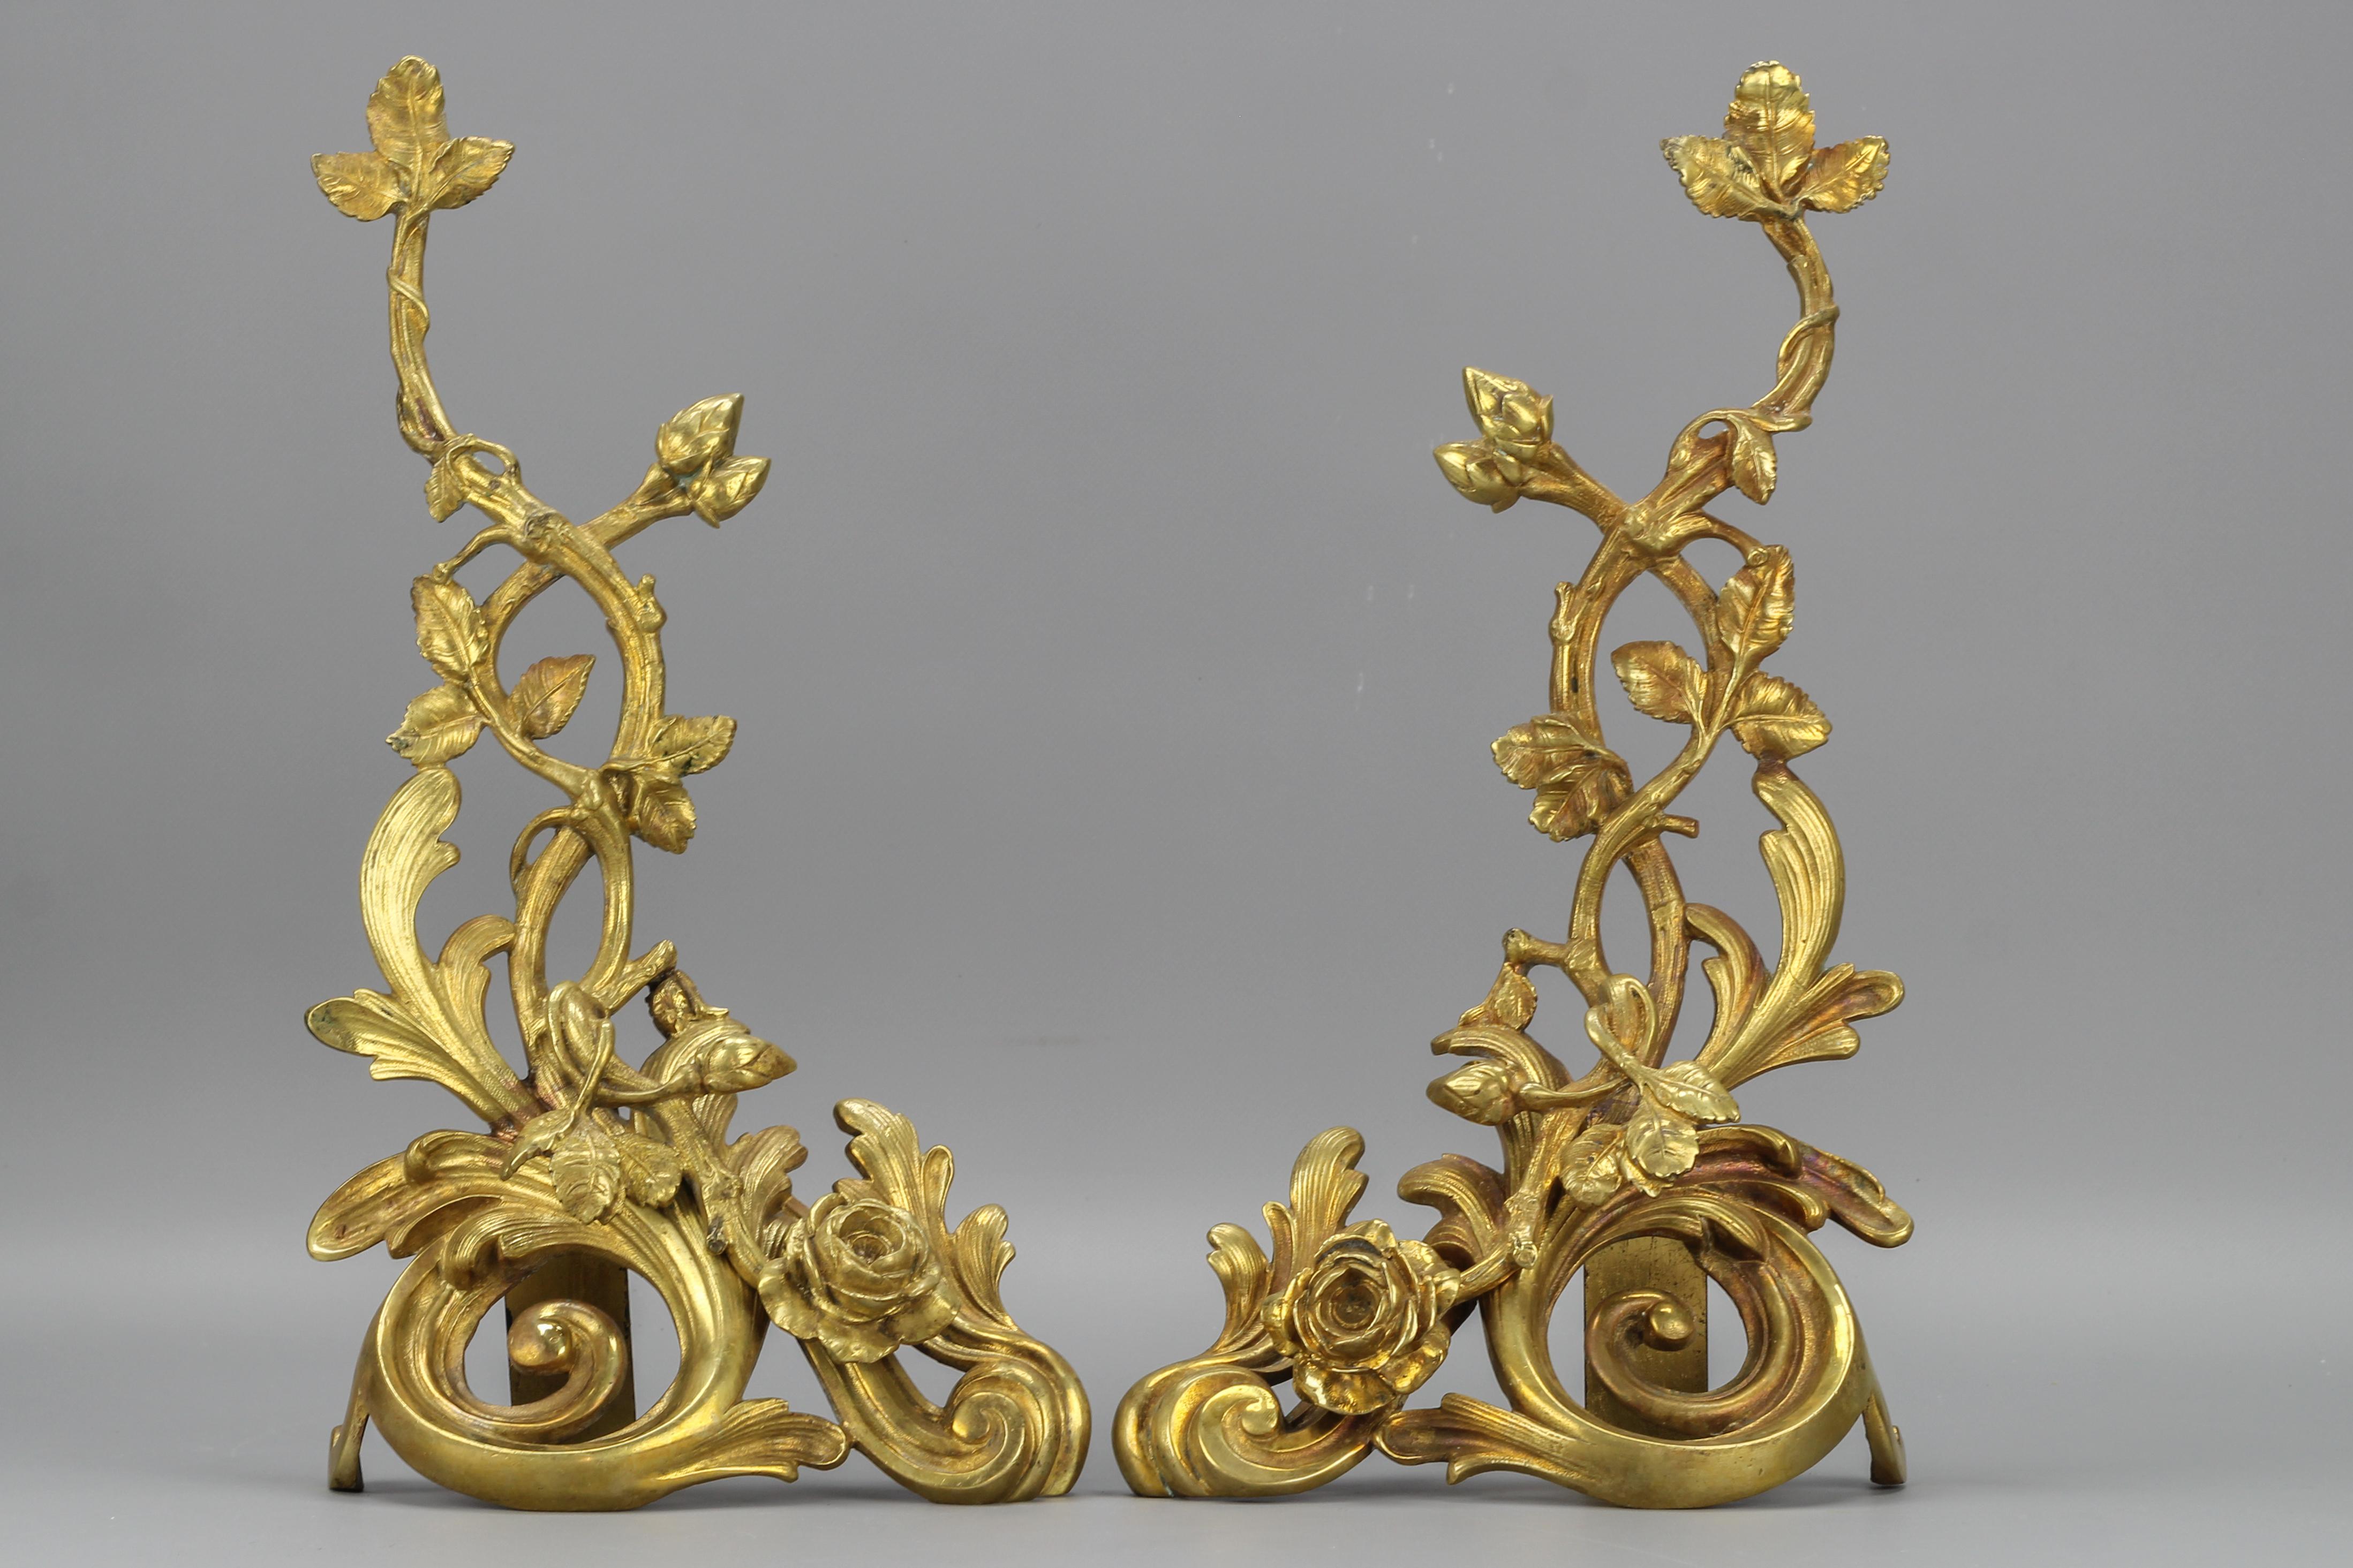 Antike französische Bronzedekore im Rokoko-Stil mit Rosen aus dem späten 19. Jahrhundert, Satz mit zwei Stück.
Dieses schöne Bronze-Dekor-Paar zeigt große Akanthusblatt-Rollen, die mit einem Rosenzweig mit Blüten, Knospen und Blättern verziert